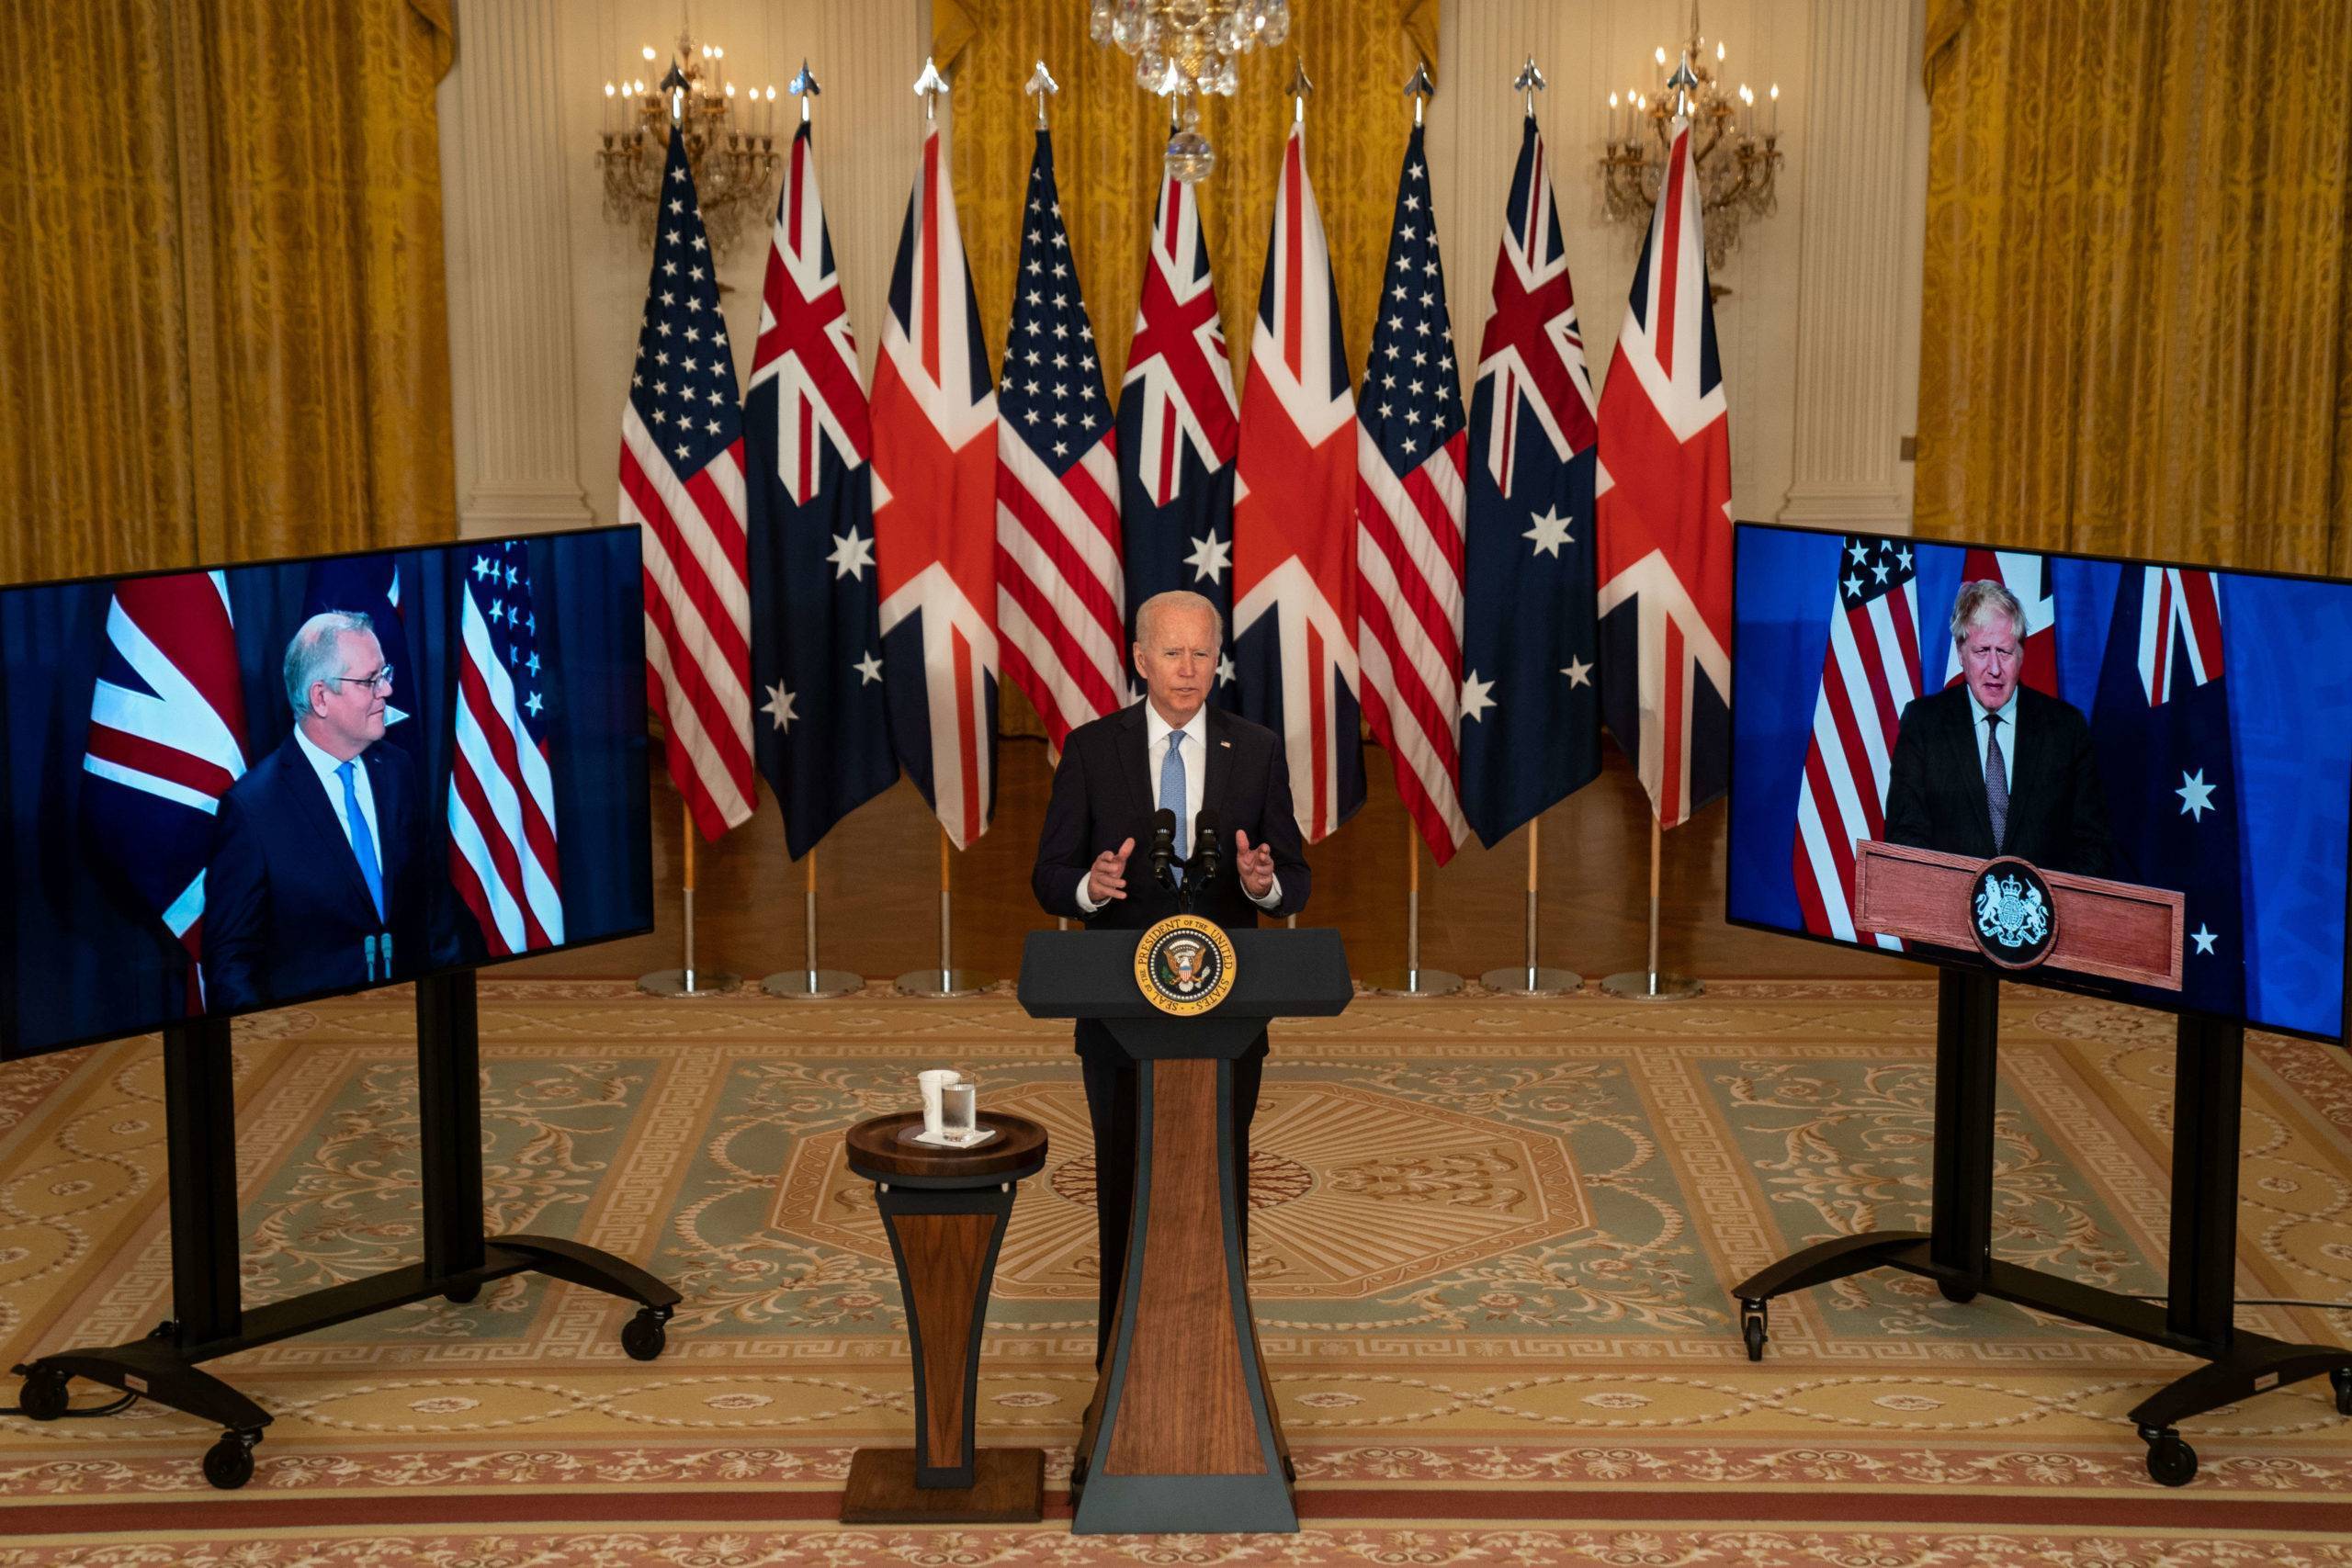 Le président Biden annonce que les États-Unis vont partager la technologie des sous-marins nucléaires avec l'Australie, East Room, Washington, Dc, États-Unis - 15 sept. 2021
Mandatory Credit: Photo by Kent Nishimura/Los Angeles Times/Shutterstock (12448011k)